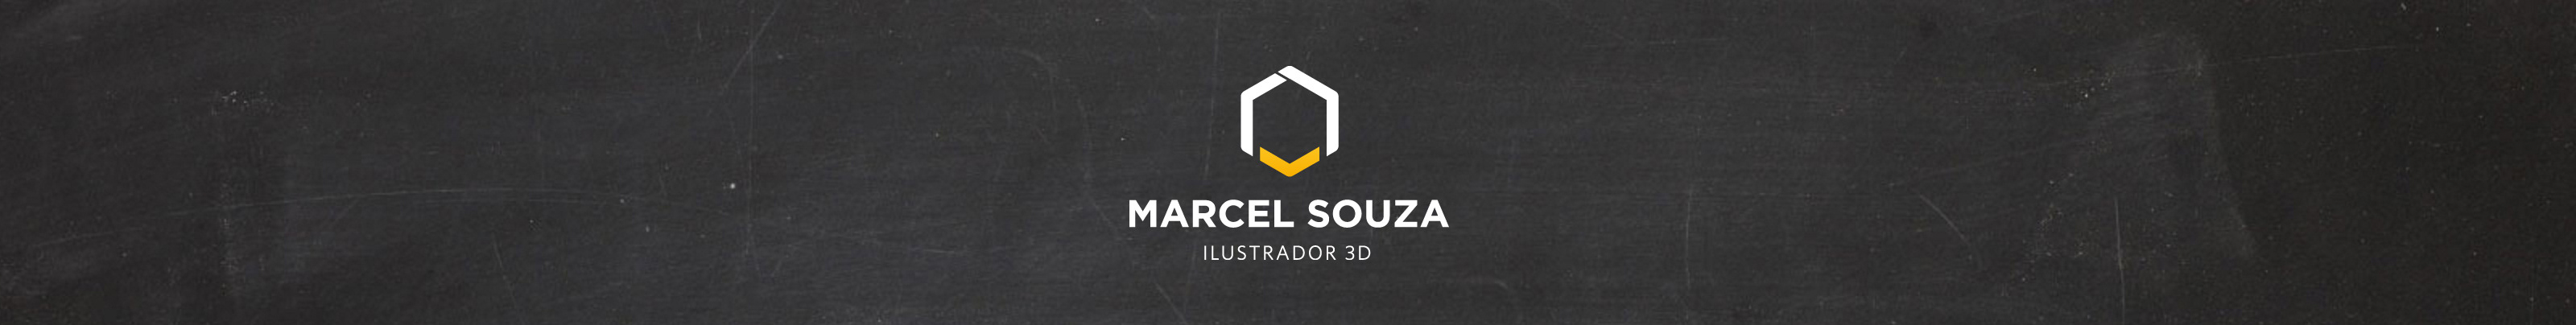 Profil-Banner von Marcel Souza